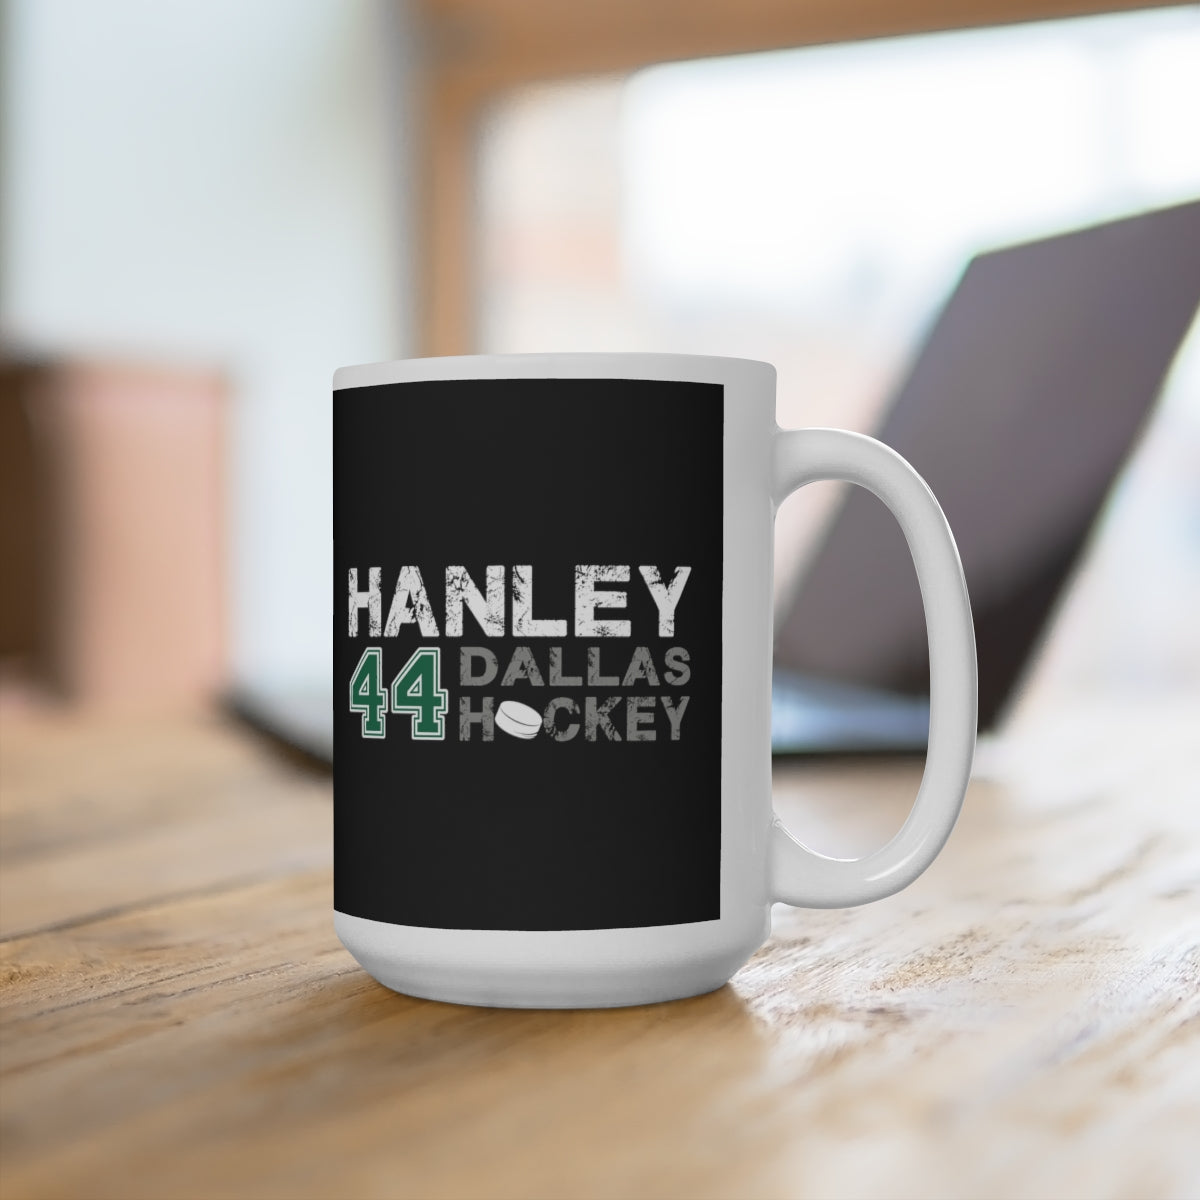 Hanley 44 Dallas Hockey Ceramic Coffee Mug In Black, 15oz